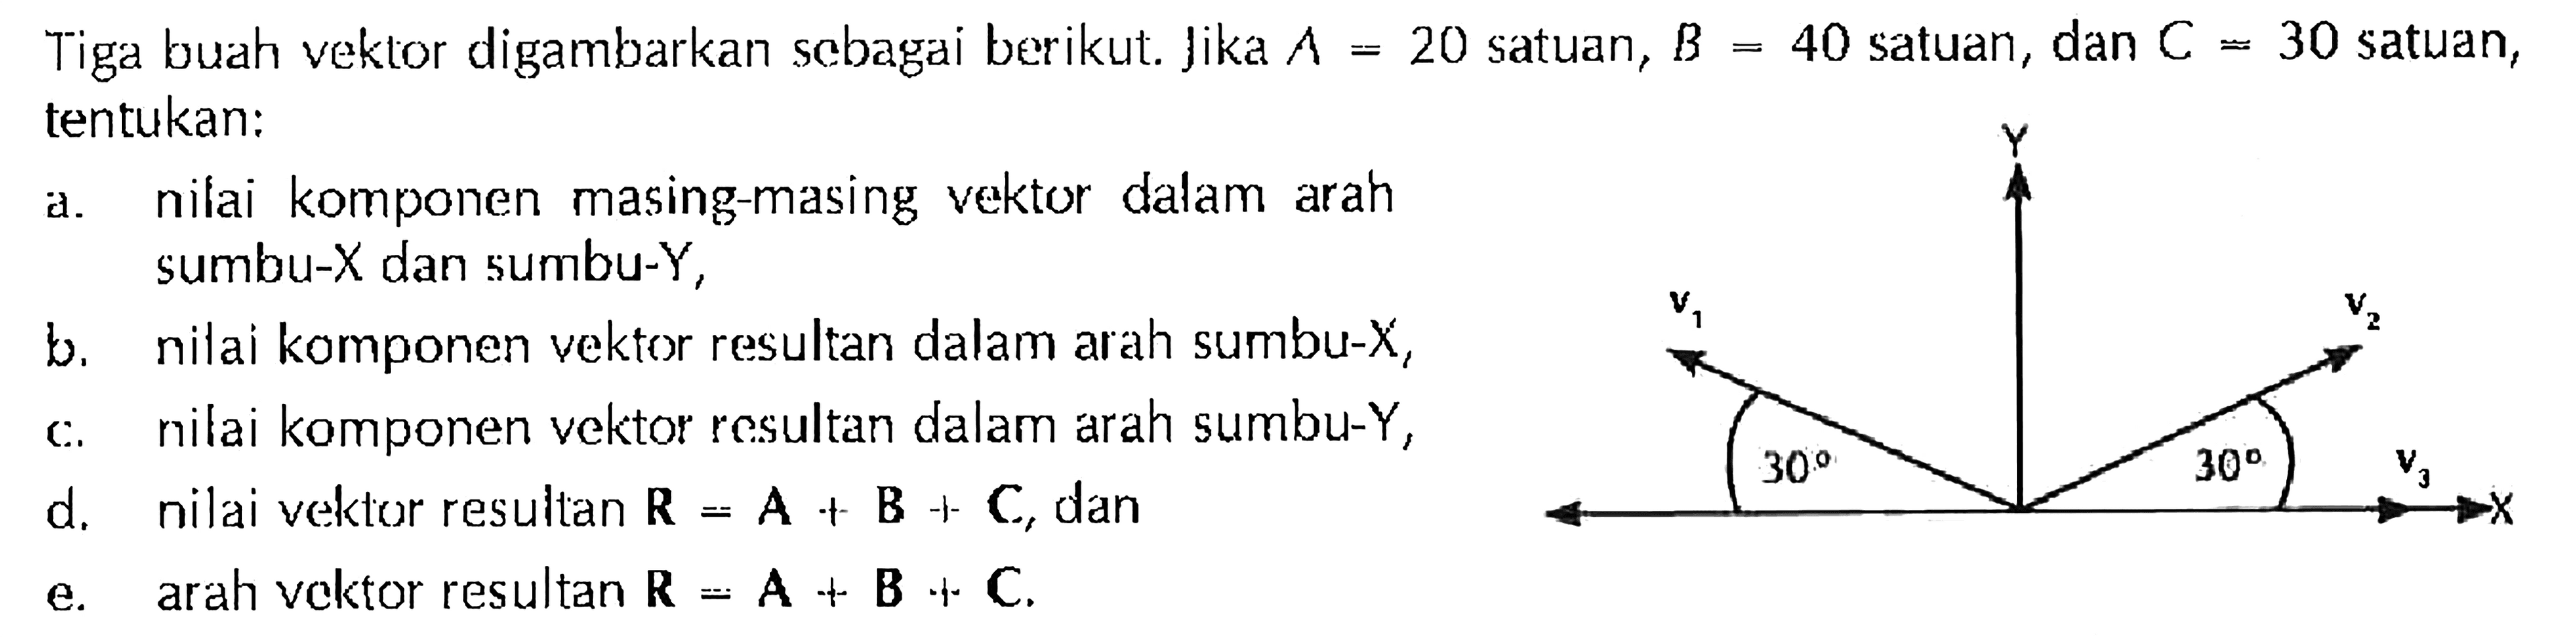 Tiga buah vektor digambarkan scbagai berikut: Jika A = 20 satuan, B = 40 satuan, dan C = 30 satuan, tentukan: a. nilai komponen masing-masing vektor dalam arah sumbu-X dan sumbu-Y, b. nilai komponen vektor resultan dalam arah sumbu-X, c. nilai komponen vektor resultan dalam arah sumbu-Y, d. nilai vektor resultan R = A + B + C, dan e. arah vektor resultan R = A + B + C.